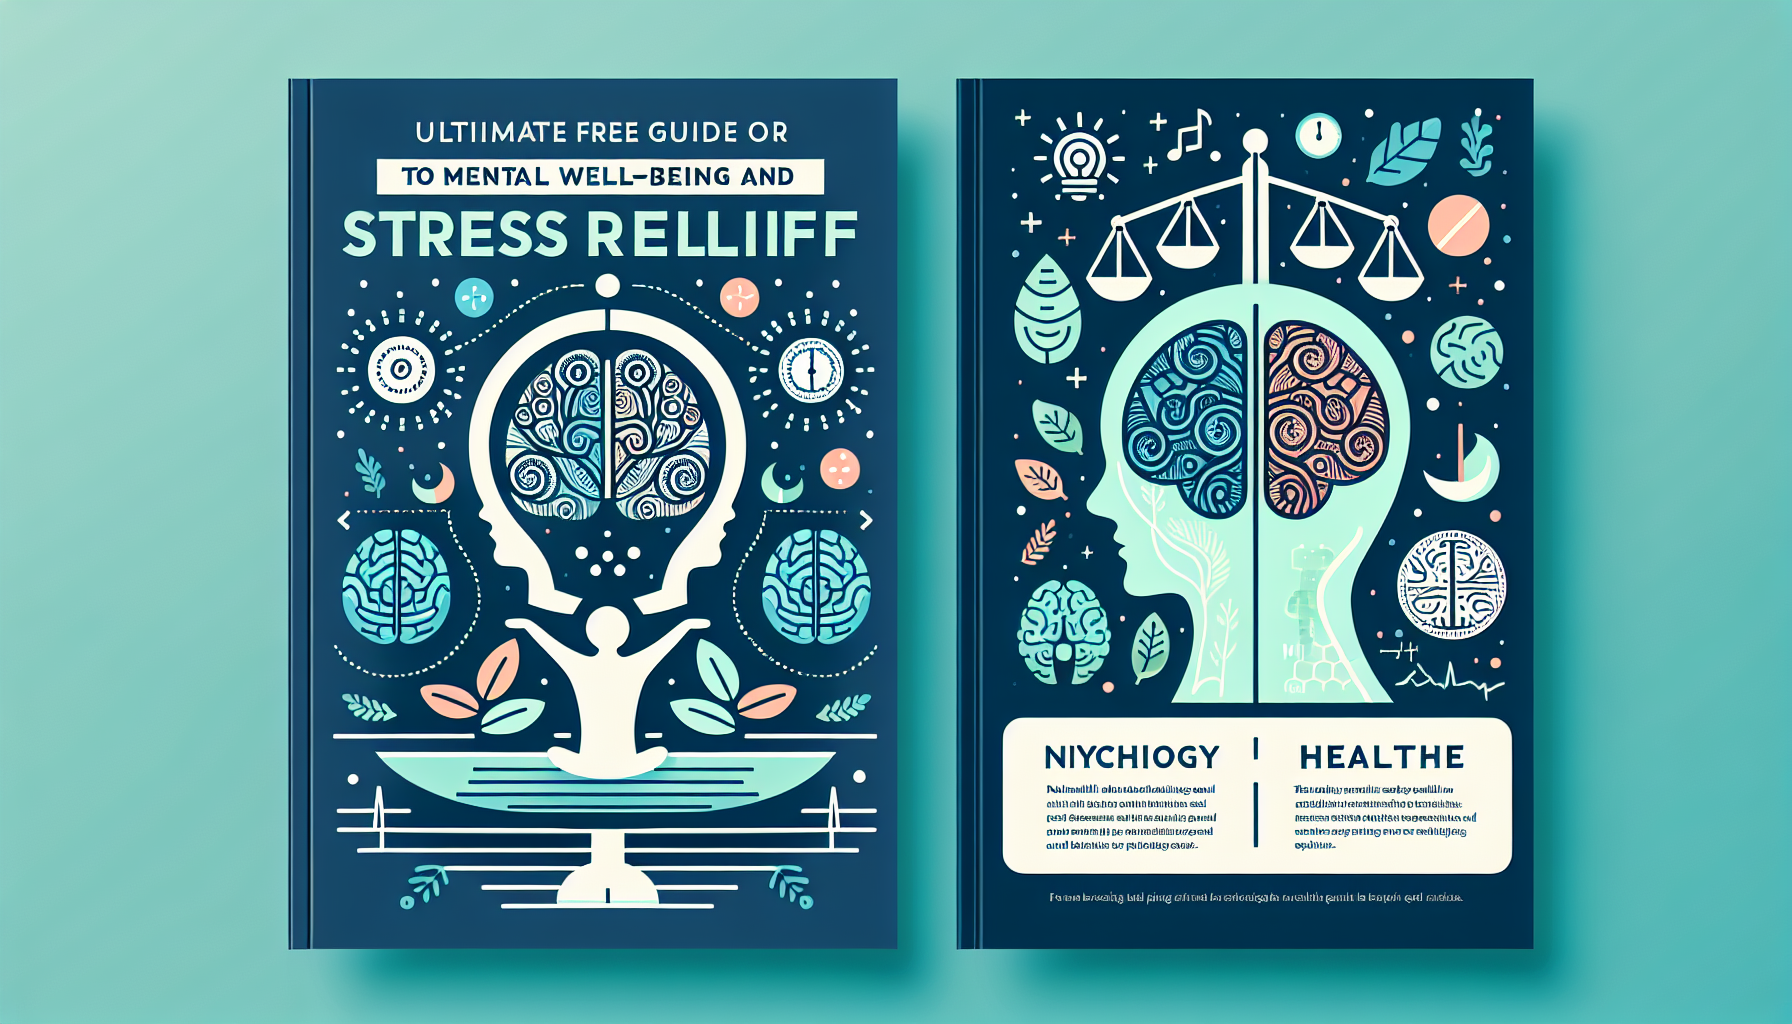 découvrez des ressources gratuites en psychologie, santé et bien-être, notamment des techniques de respiration pour apaiser le stress.